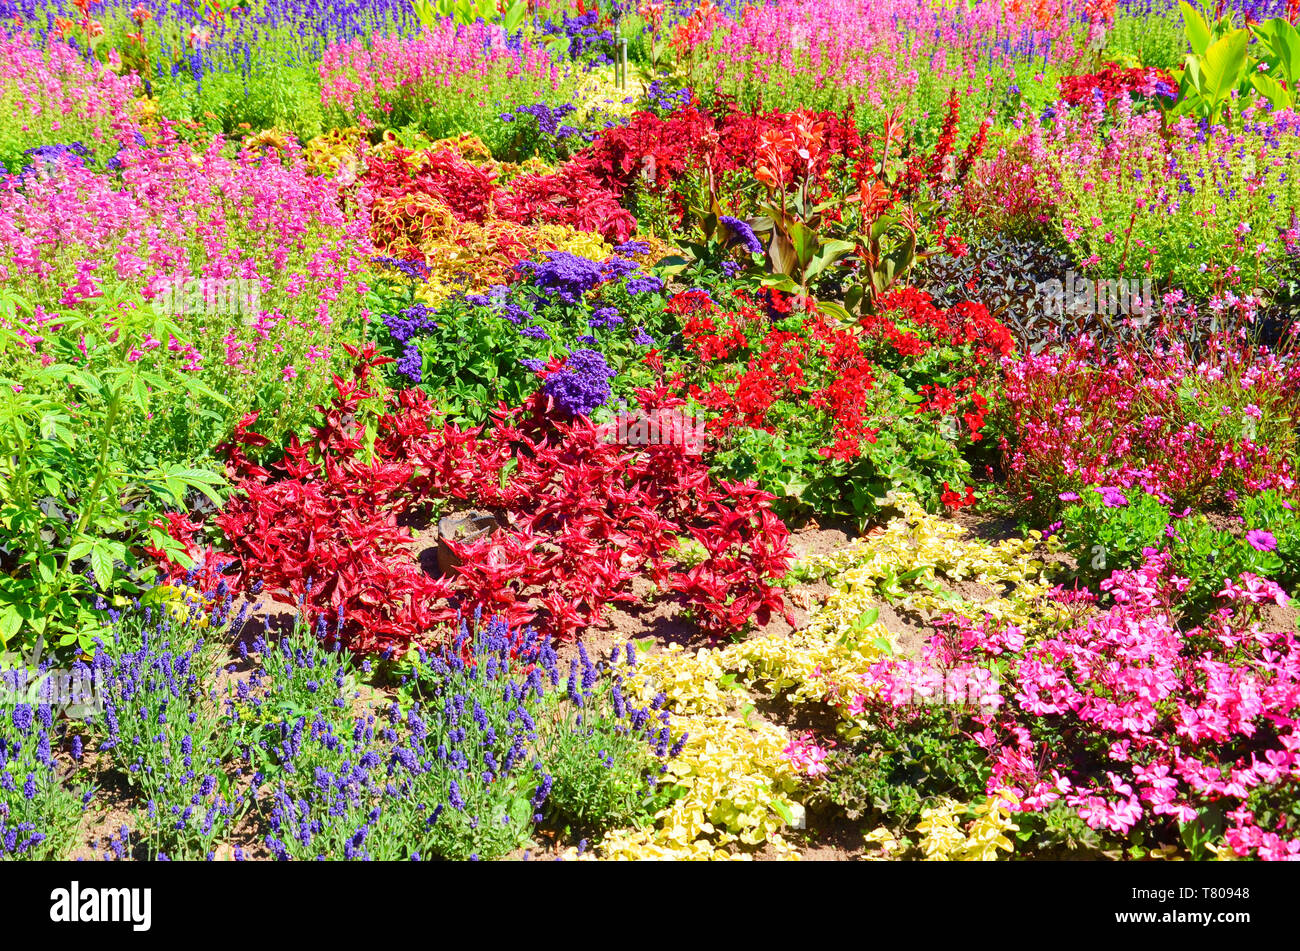 Impresionante cama de flores con diferentes especies de flores. Las maravillosas  flores tienen colores brillantes, principalmente rojo, rosa y púrpura  Fotografía de stock - Alamy